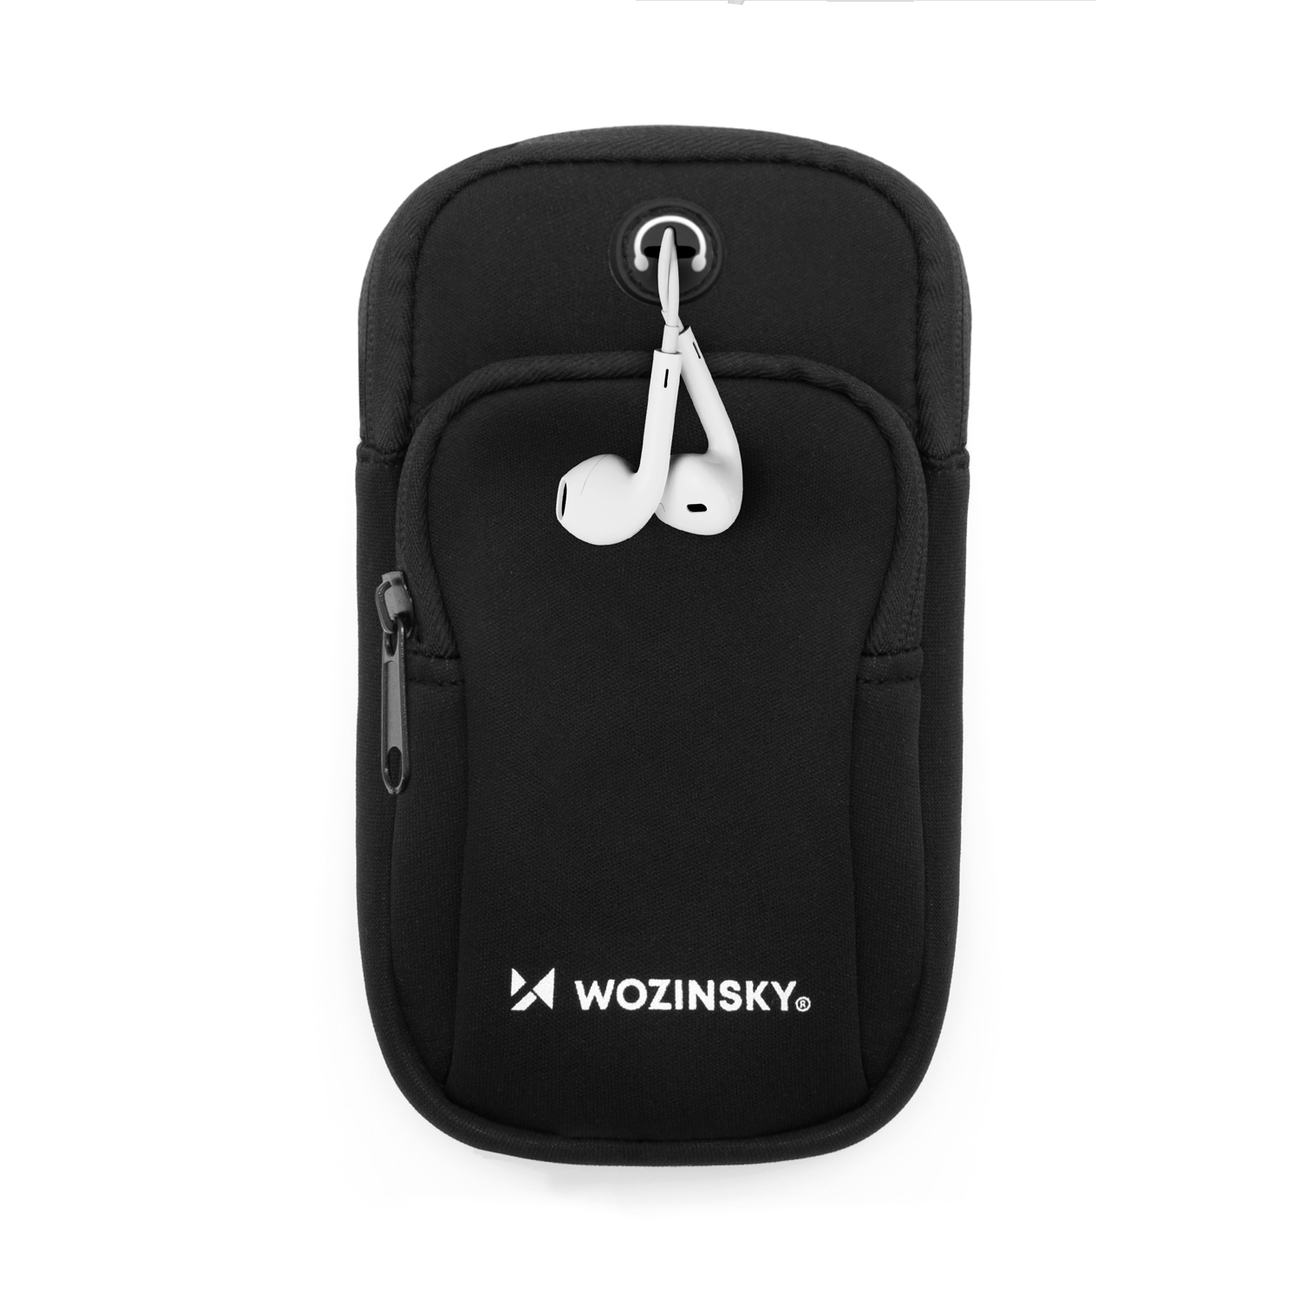 Wozinsky opaska na telefon do biegania armband czarna WABBK1 - Wozinsky.com